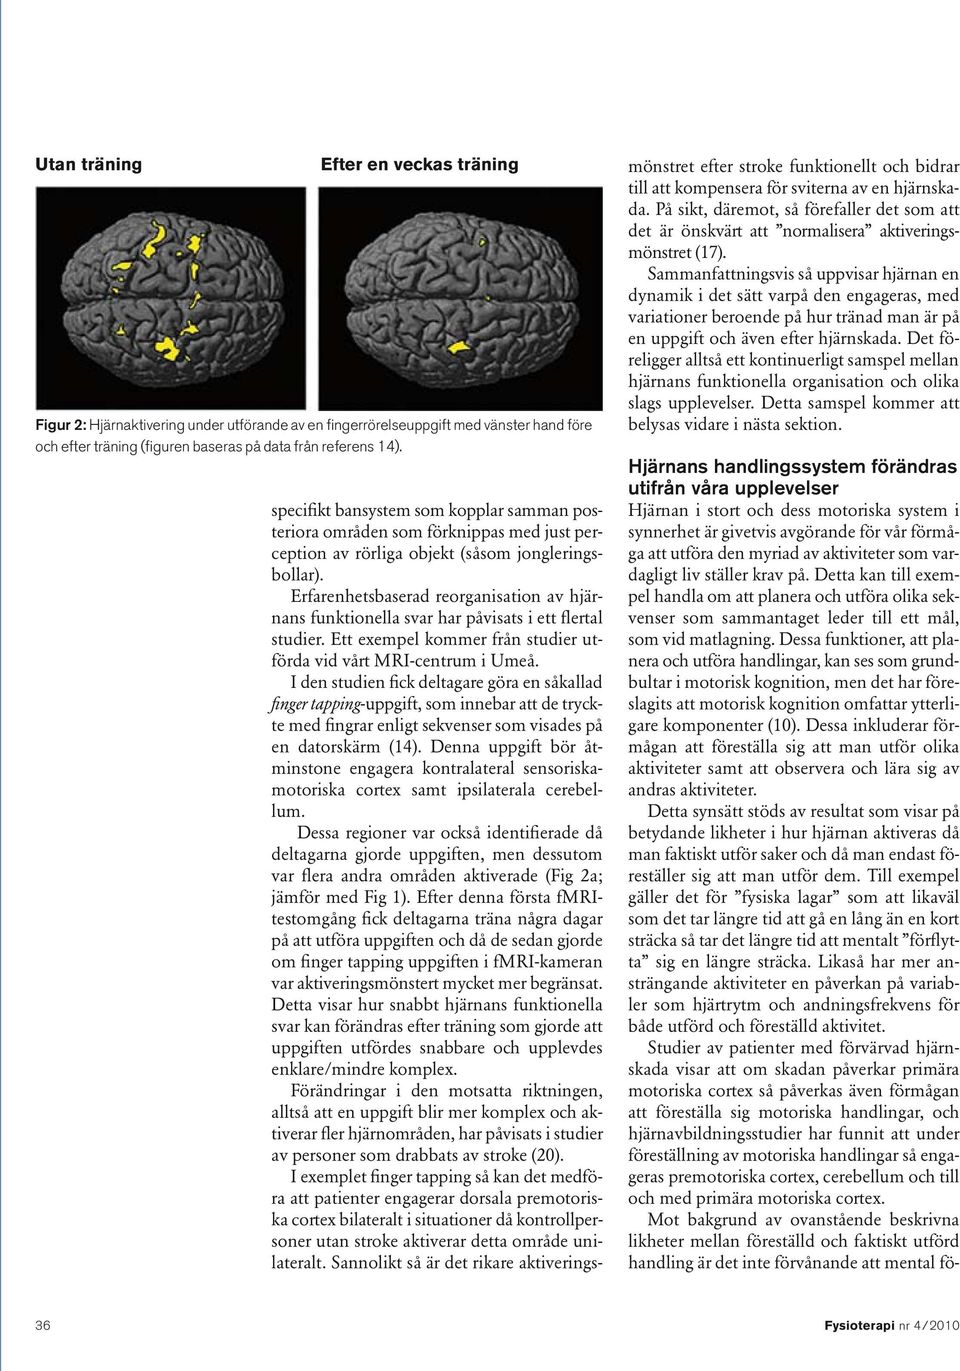 Erfarenhetsbaserad reorganisation av hjärnans funktionella svar har påvisats i ett flertal studier. Ett exempel kommer från studier utförda vid vårt MRI-centrum i Umeå.